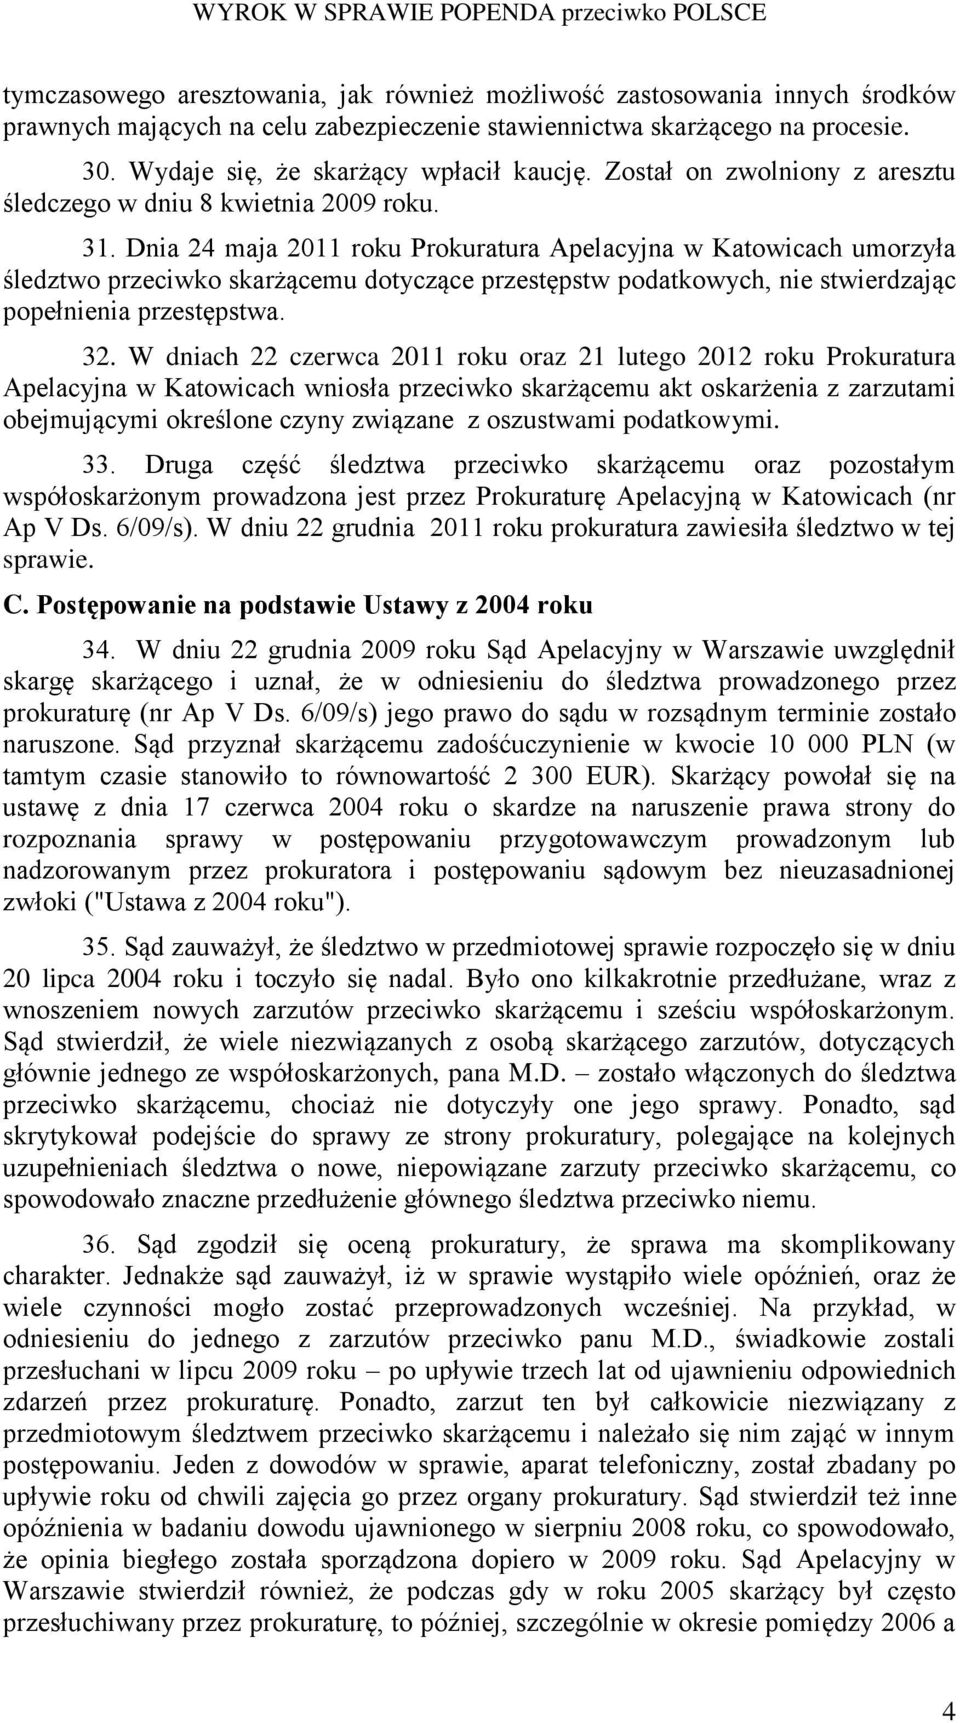 Dnia 24 maja 2011 roku Prokuratura Apelacyjna w Katowicach umorzyła śledztwo przeciwko skarżącemu dotyczące przestępstw podatkowych, nie stwierdzając popełnienia przestępstwa. 32.